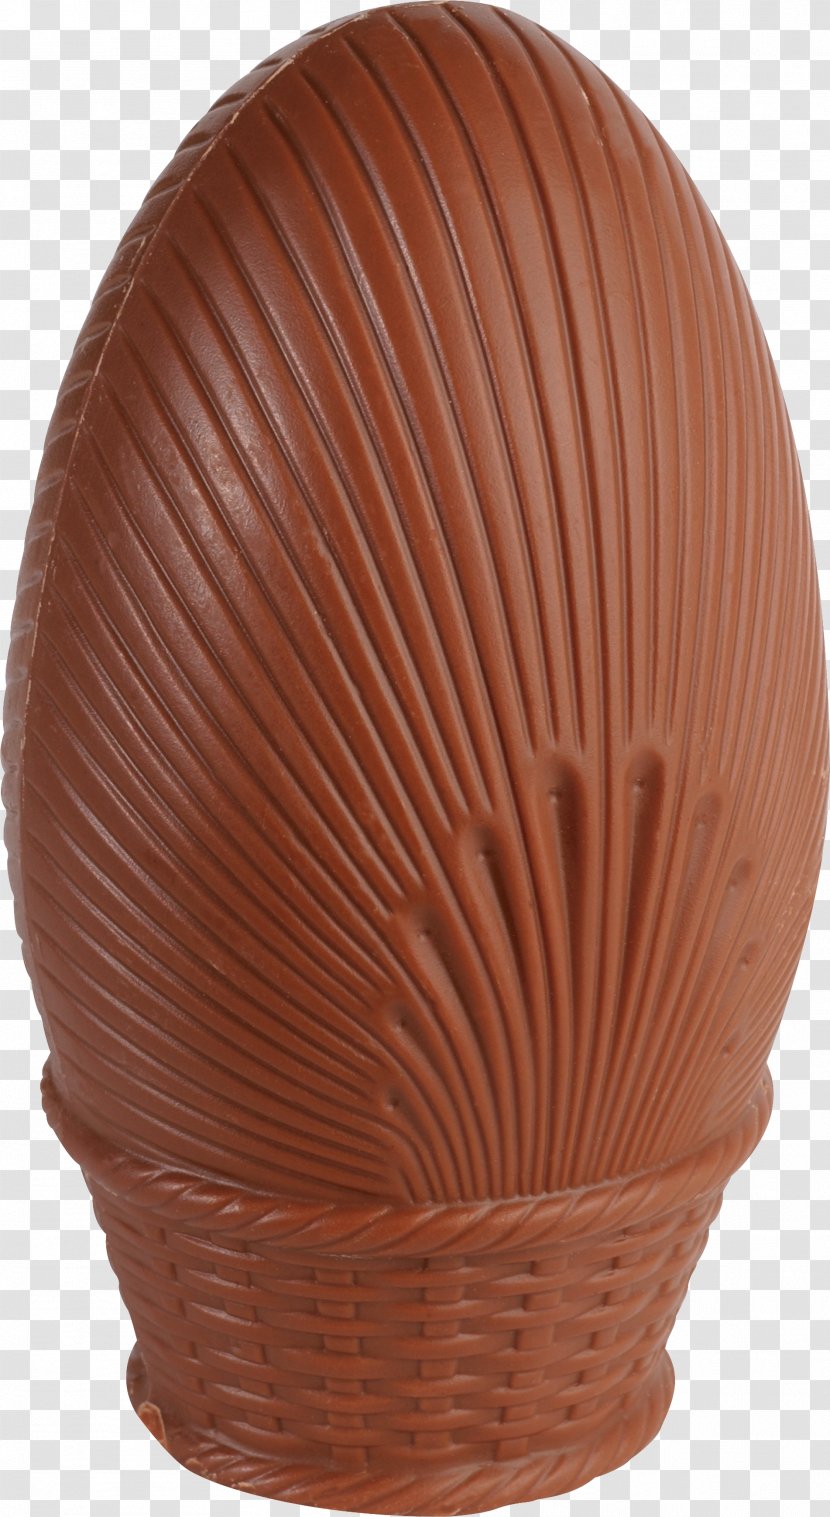 Chocolate Bar - Artifact - Image Transparent PNG